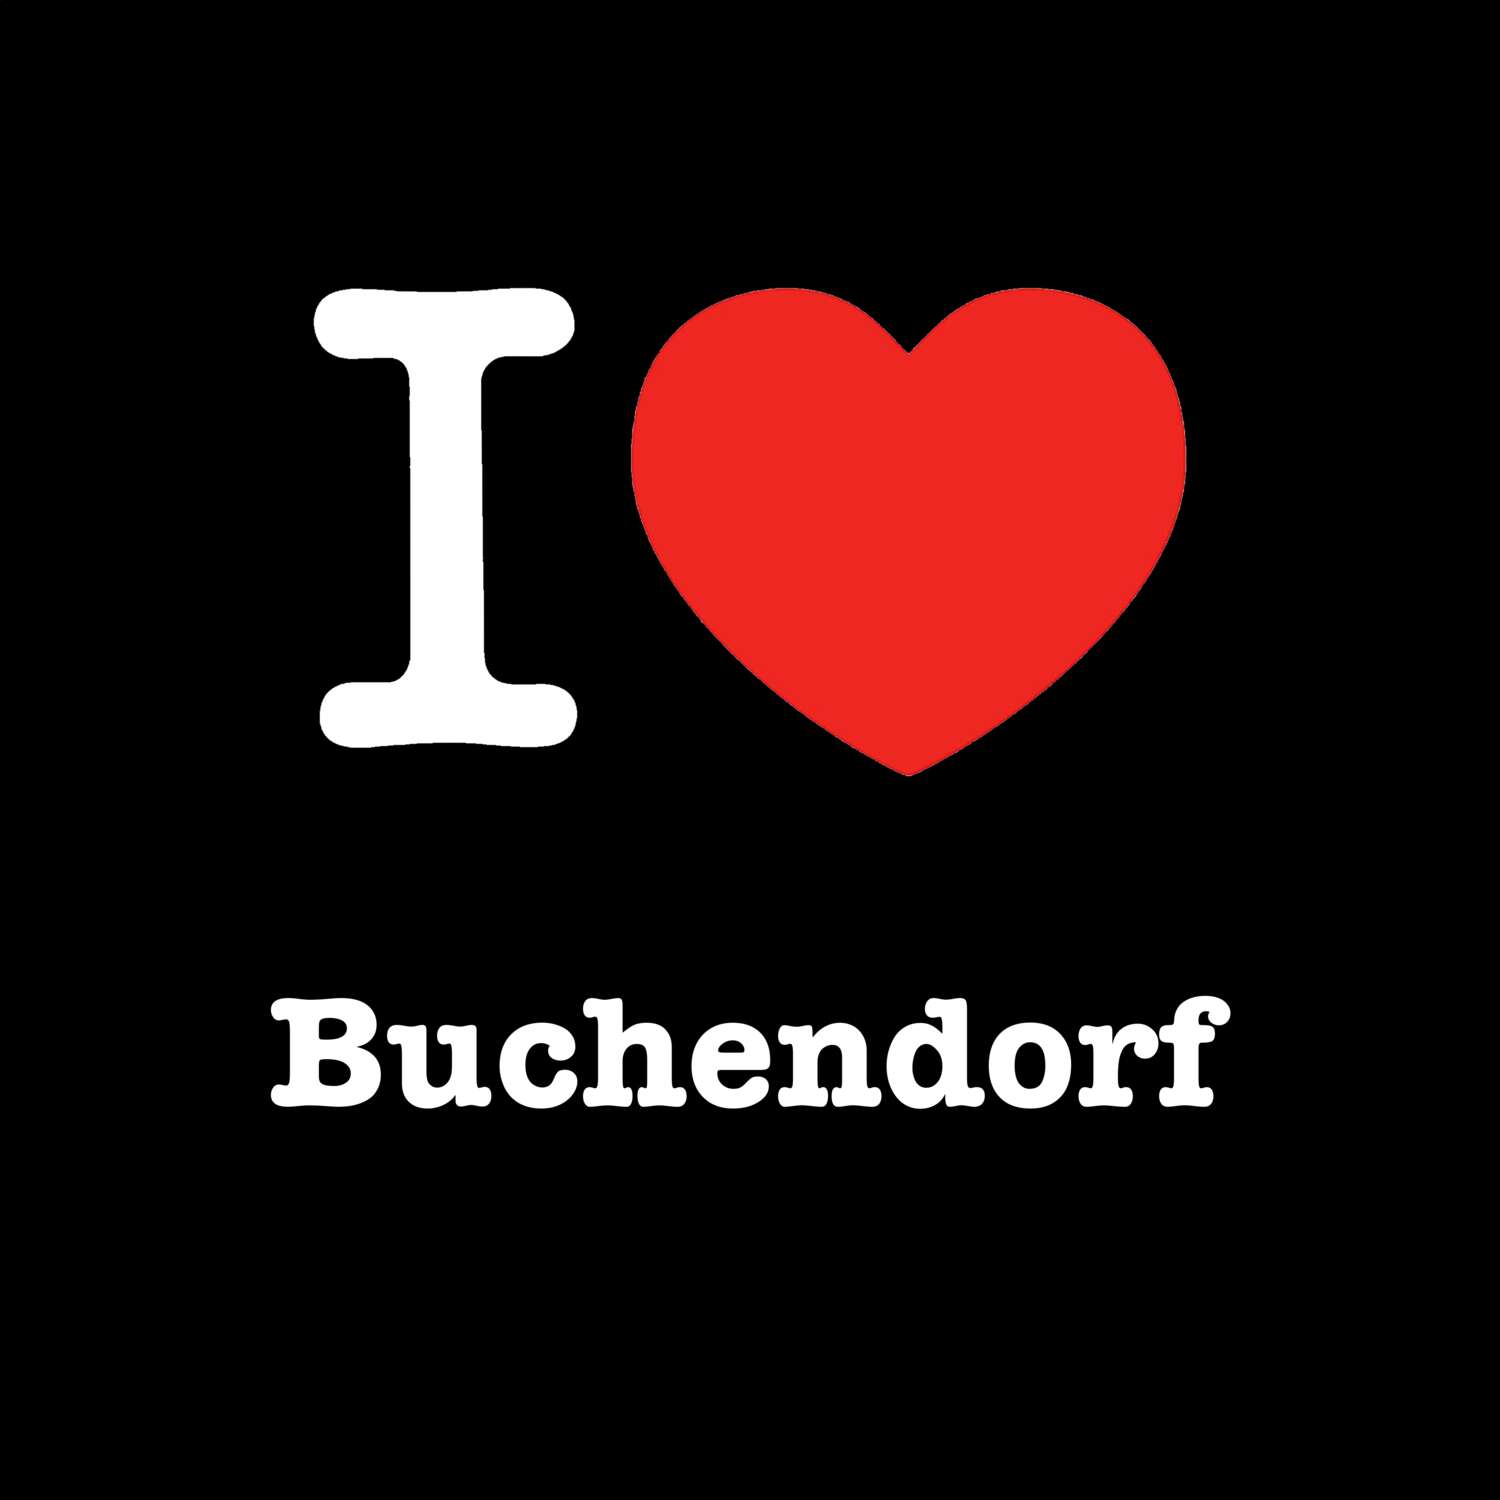 Buchendorf T-Shirt »I love«